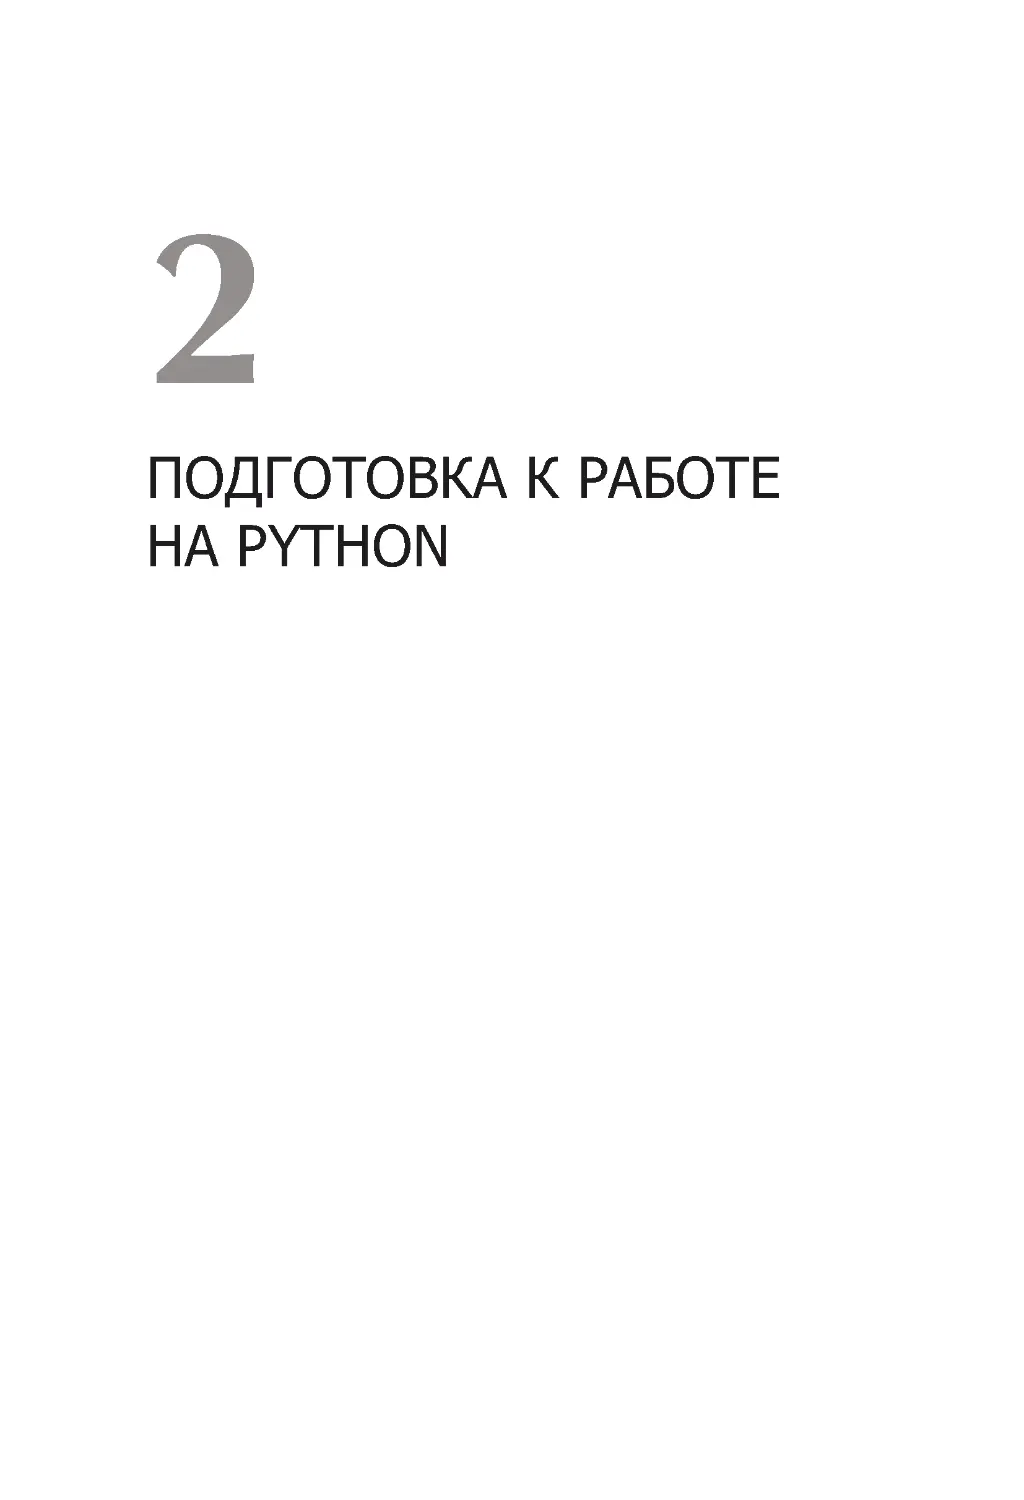 Глава 2. Подготовка к работе на Python